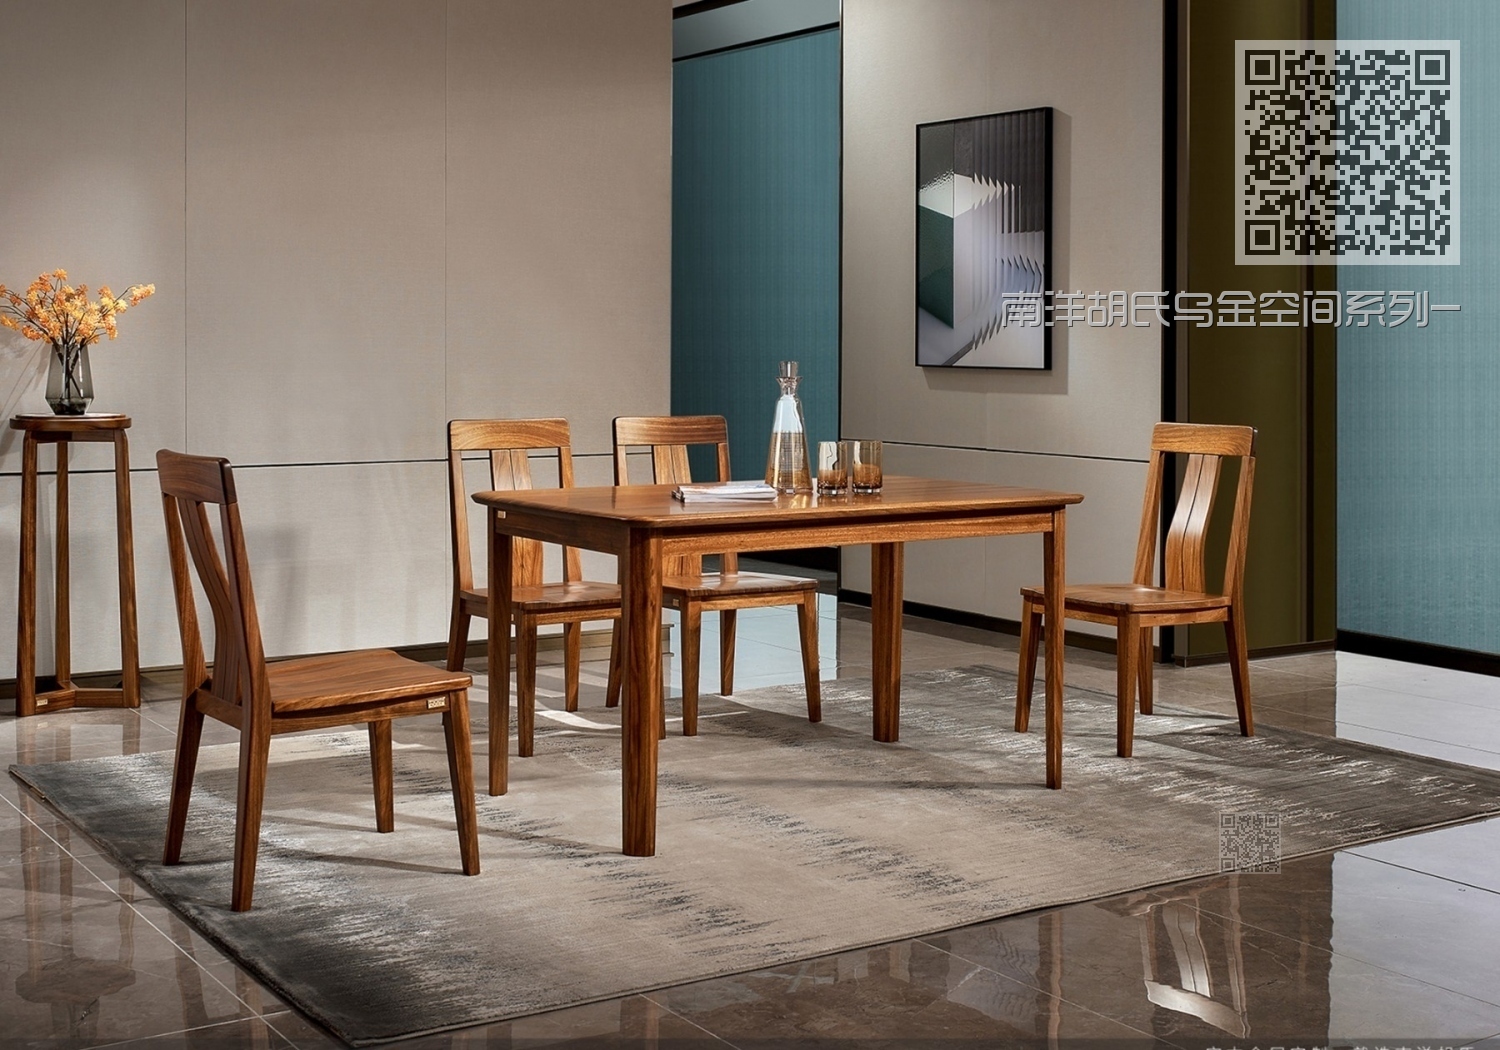 南洋胡氏乌金空间系列-餐厅新中式桌椅组合02